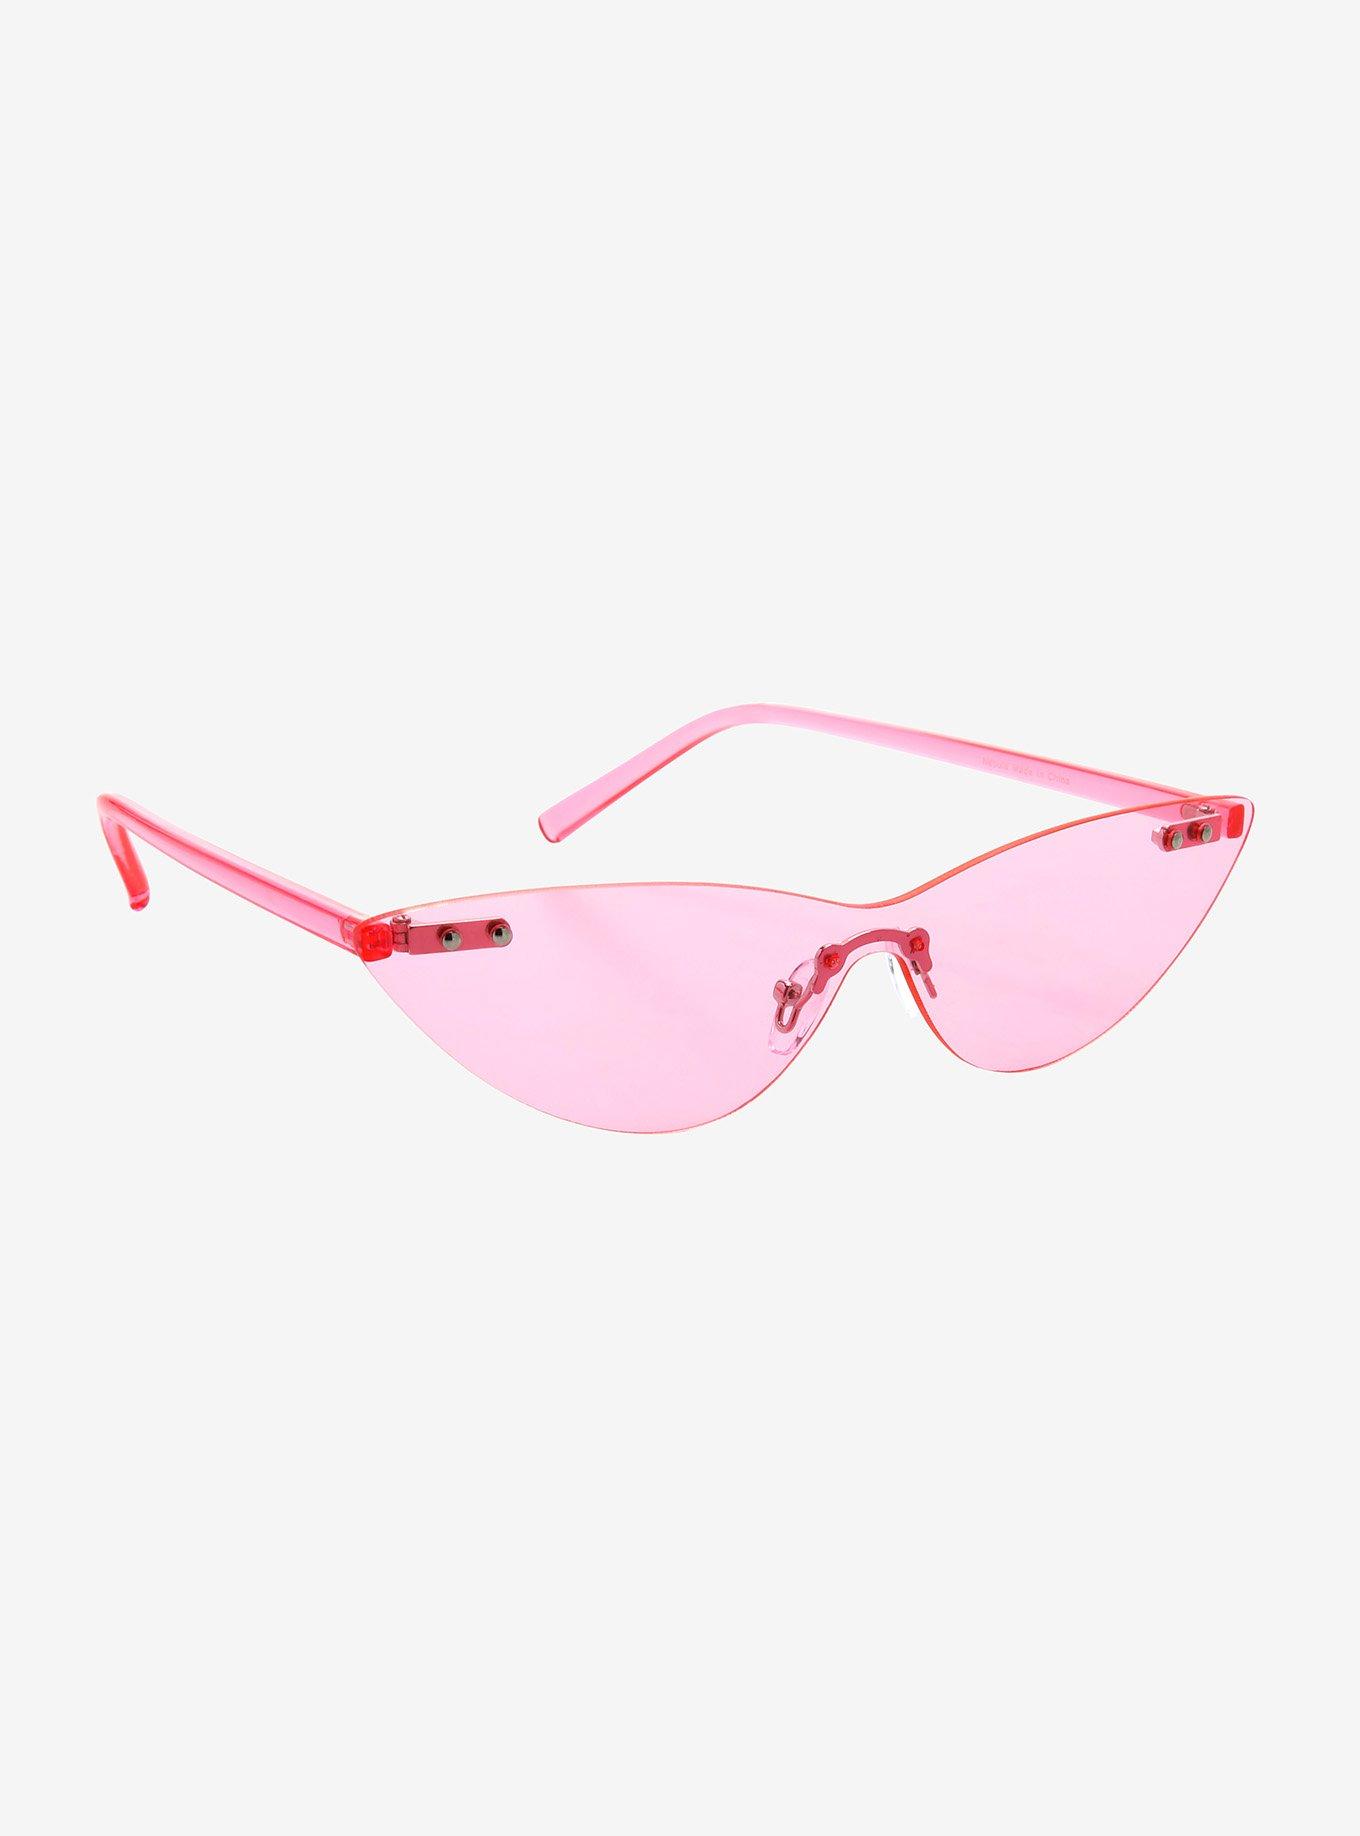 Pink Thats Hot Frameless Sunglasses